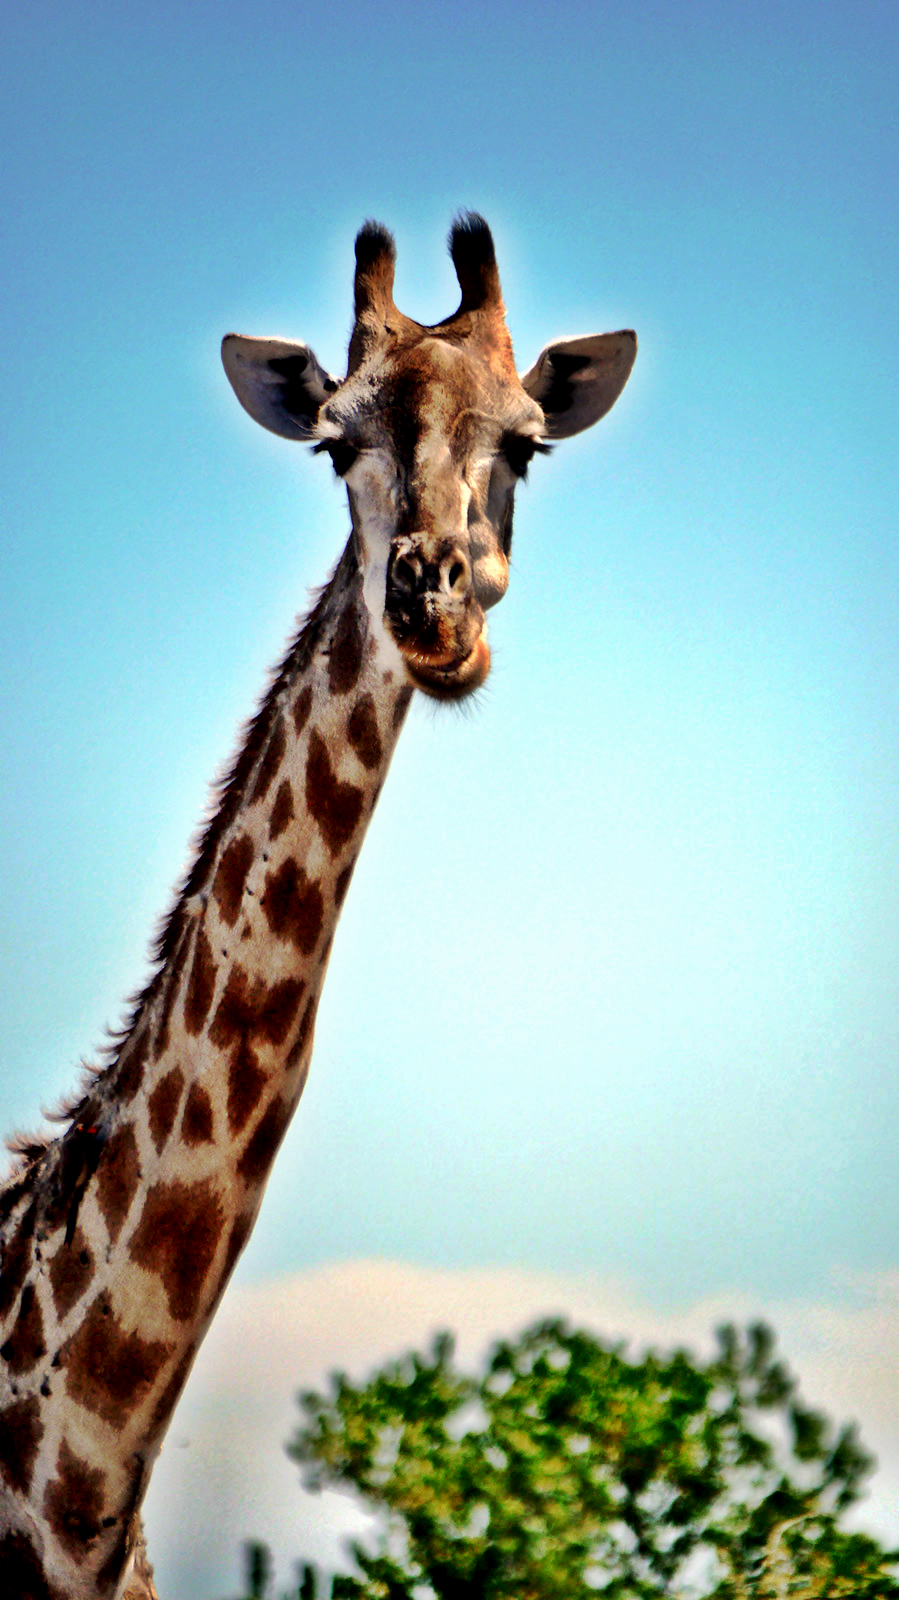 Giraffe standing tall in Chobe National Park, Botswana